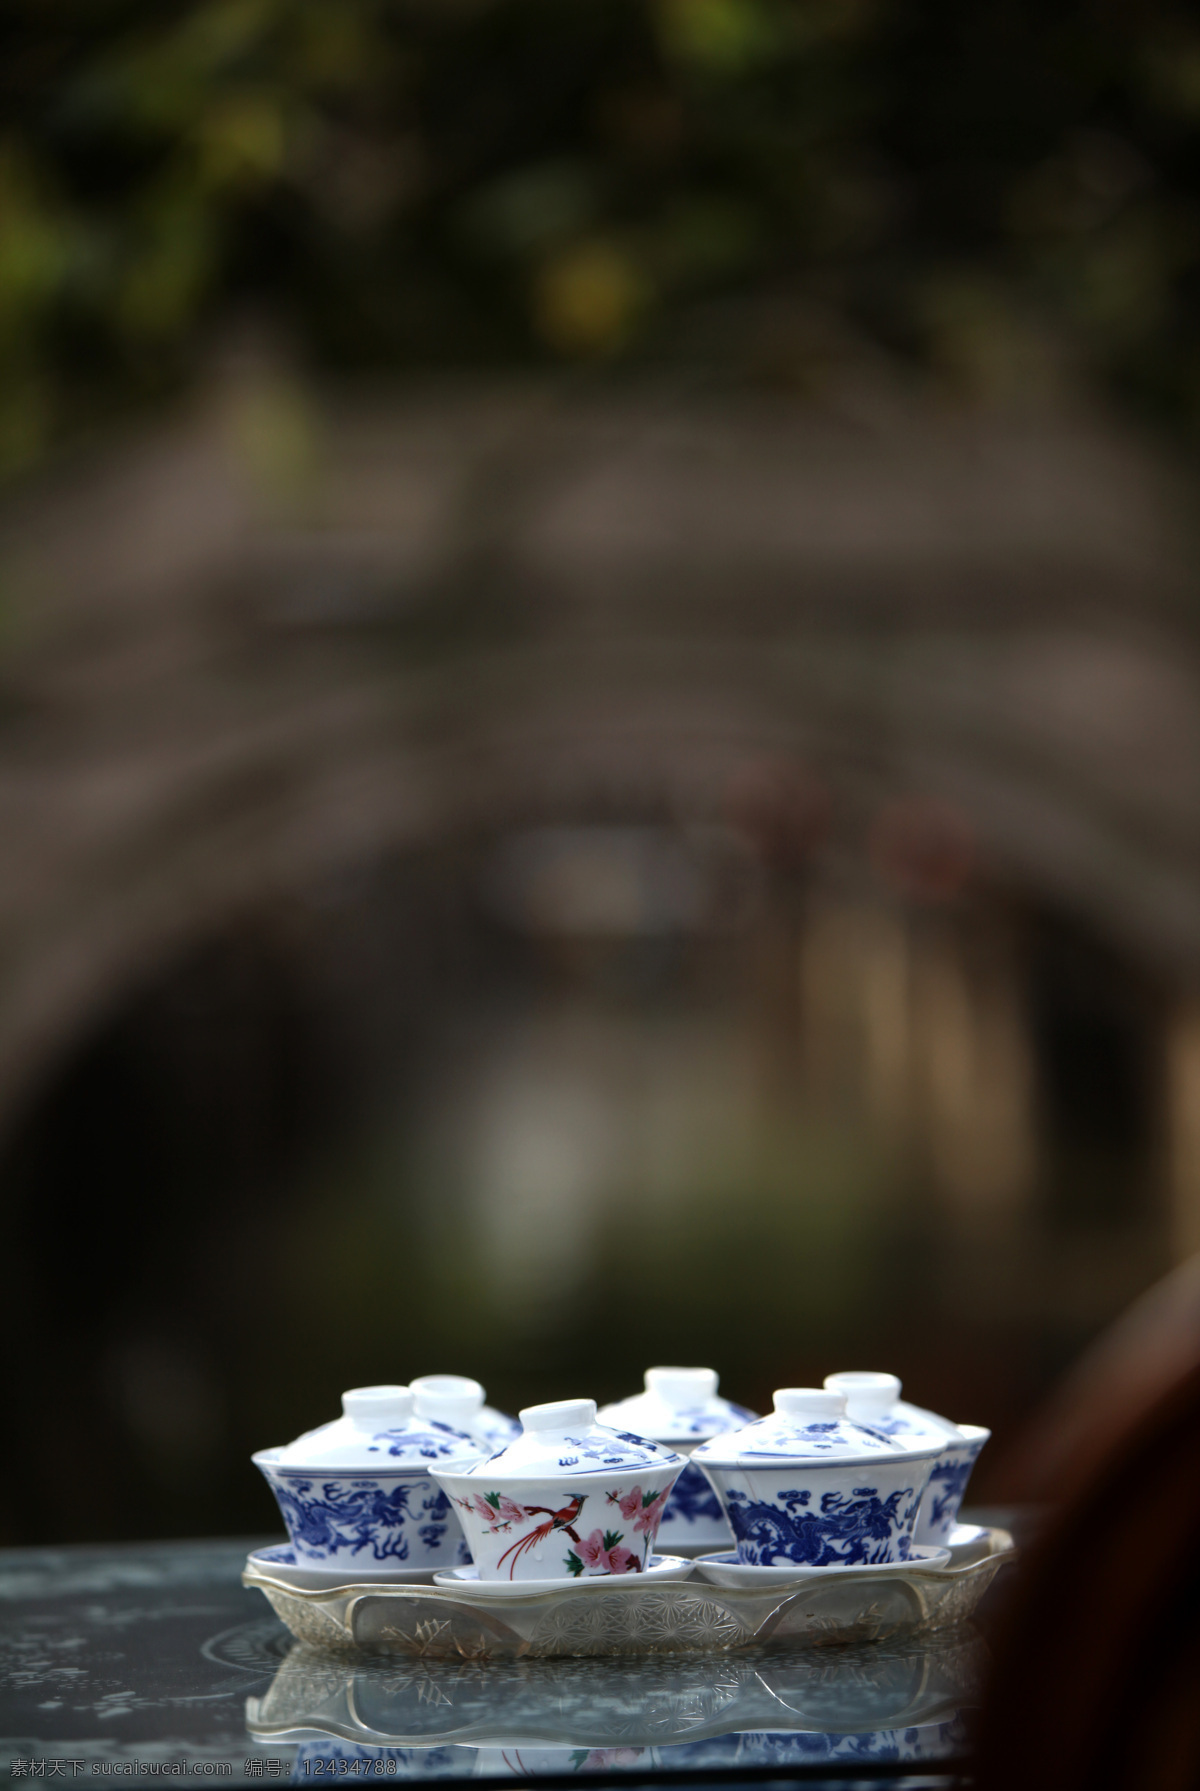 青花瓷杯 同里古镇 江南水乡 5a级景区 旅游摄影 高精图片 传统文化 文化艺术